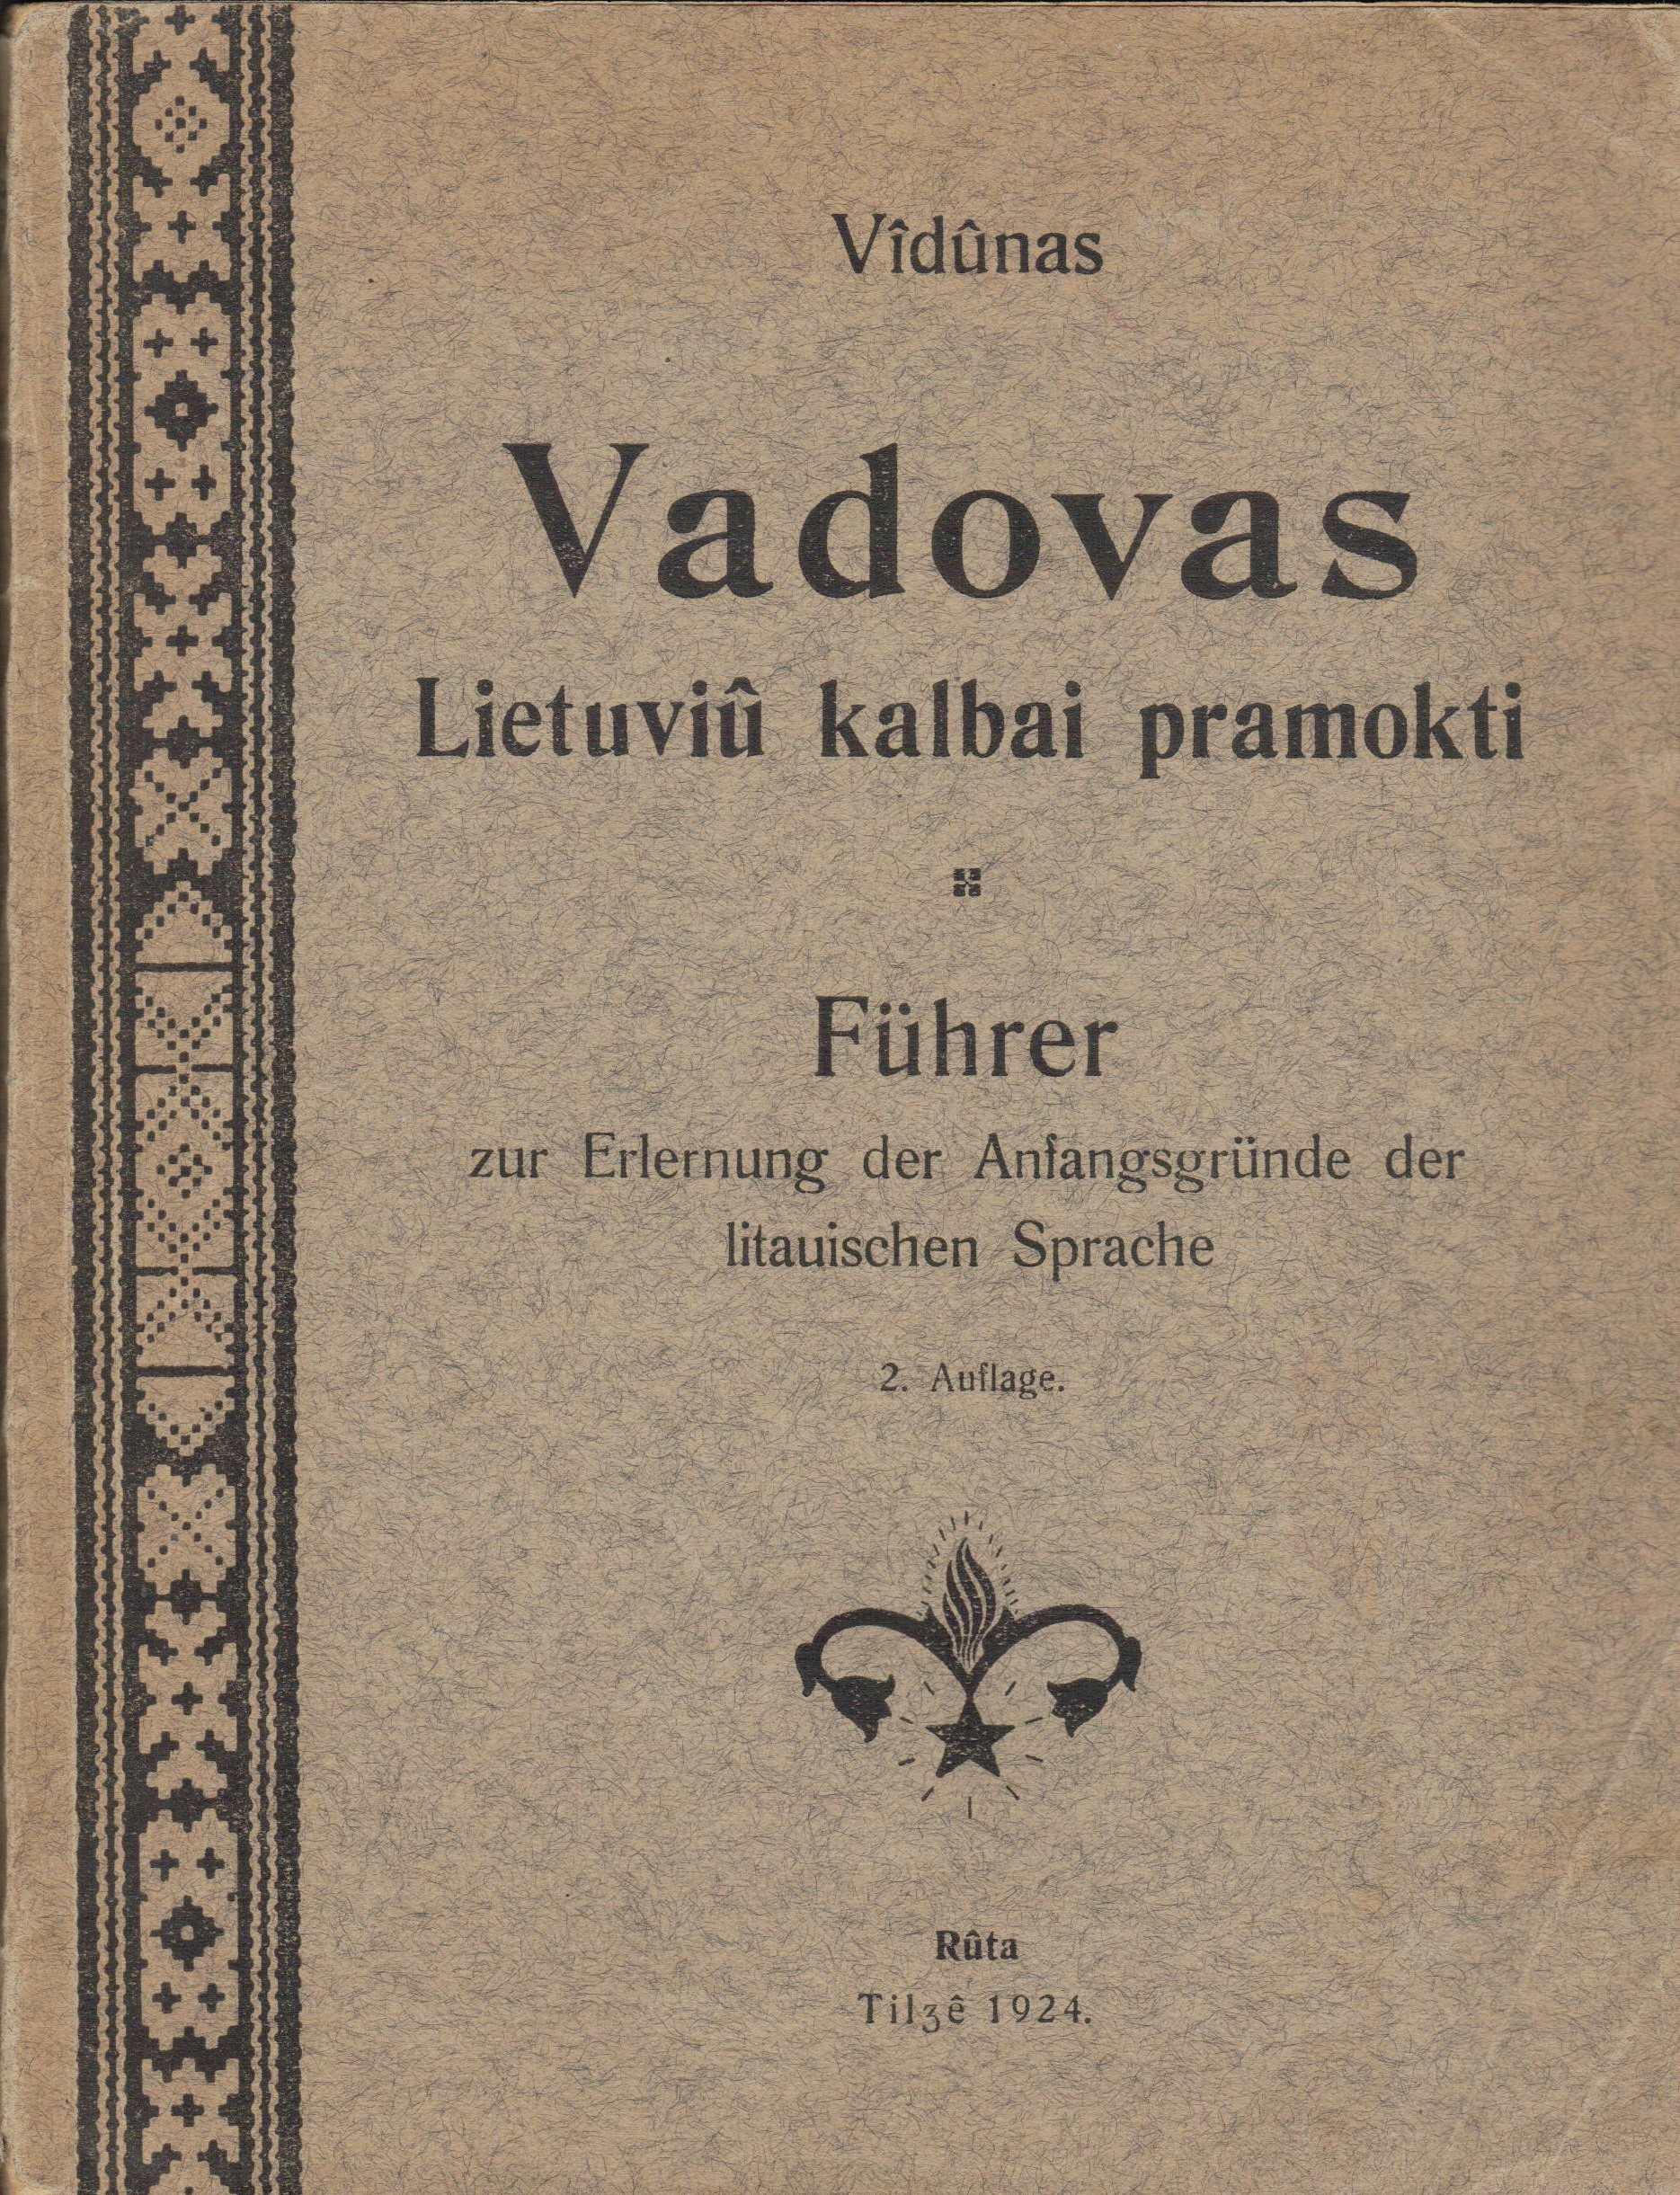 Vydūnas. Vadovas lietuvių kalbai pramokti. Tilžė, 1924 m. II laida MLLM 5082/K2 1320